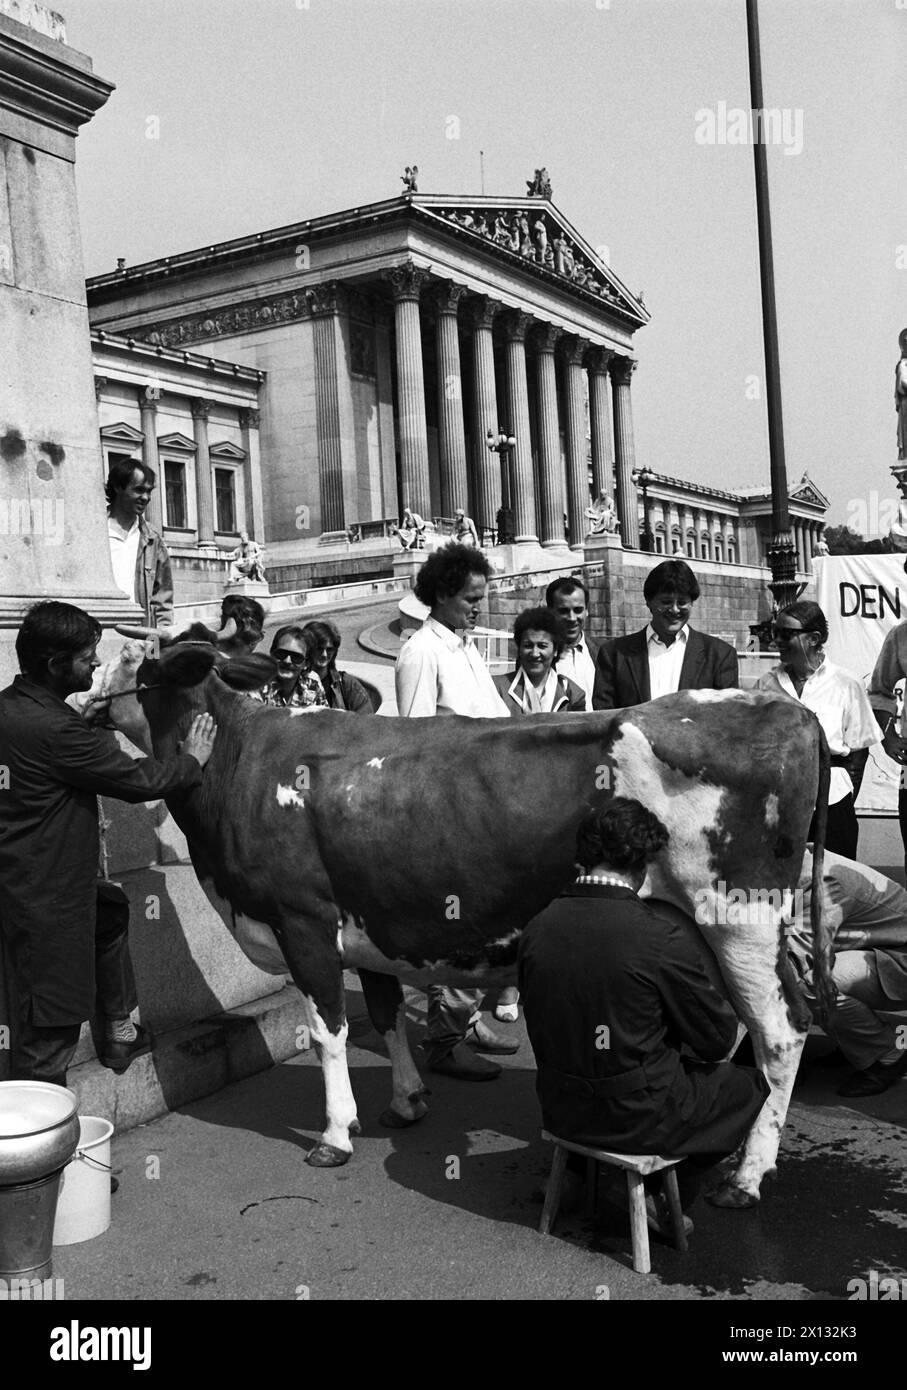 Das Foto wurde am 17. Mai 1988 anlässlich einer Demonstration der Österreichischen Grünen gegen die laufenden Verhandlungen über die Marktverordnungen takan und zeigt eine Kuh vor dem parlament, die gemolken wird. - 19880517 PD0009 - Rechteinfo: Rechte verwaltet (RM) Stockfoto